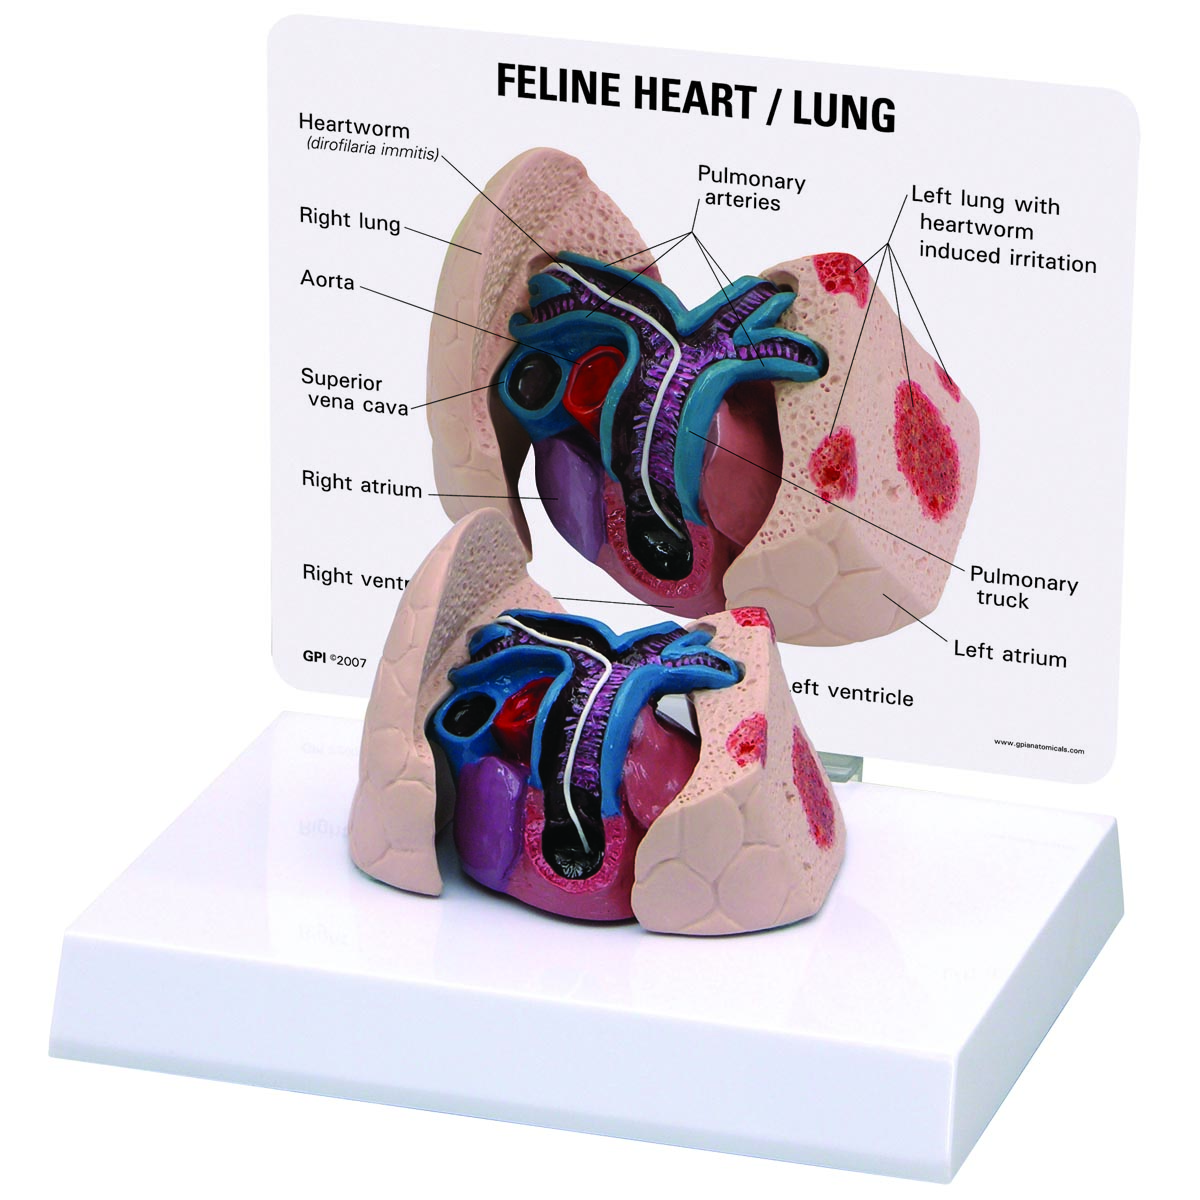 Herz- und Lungenmodell einer Katze, Bestellnummer 1019584, W33375, 9141, GPI Anatomicals